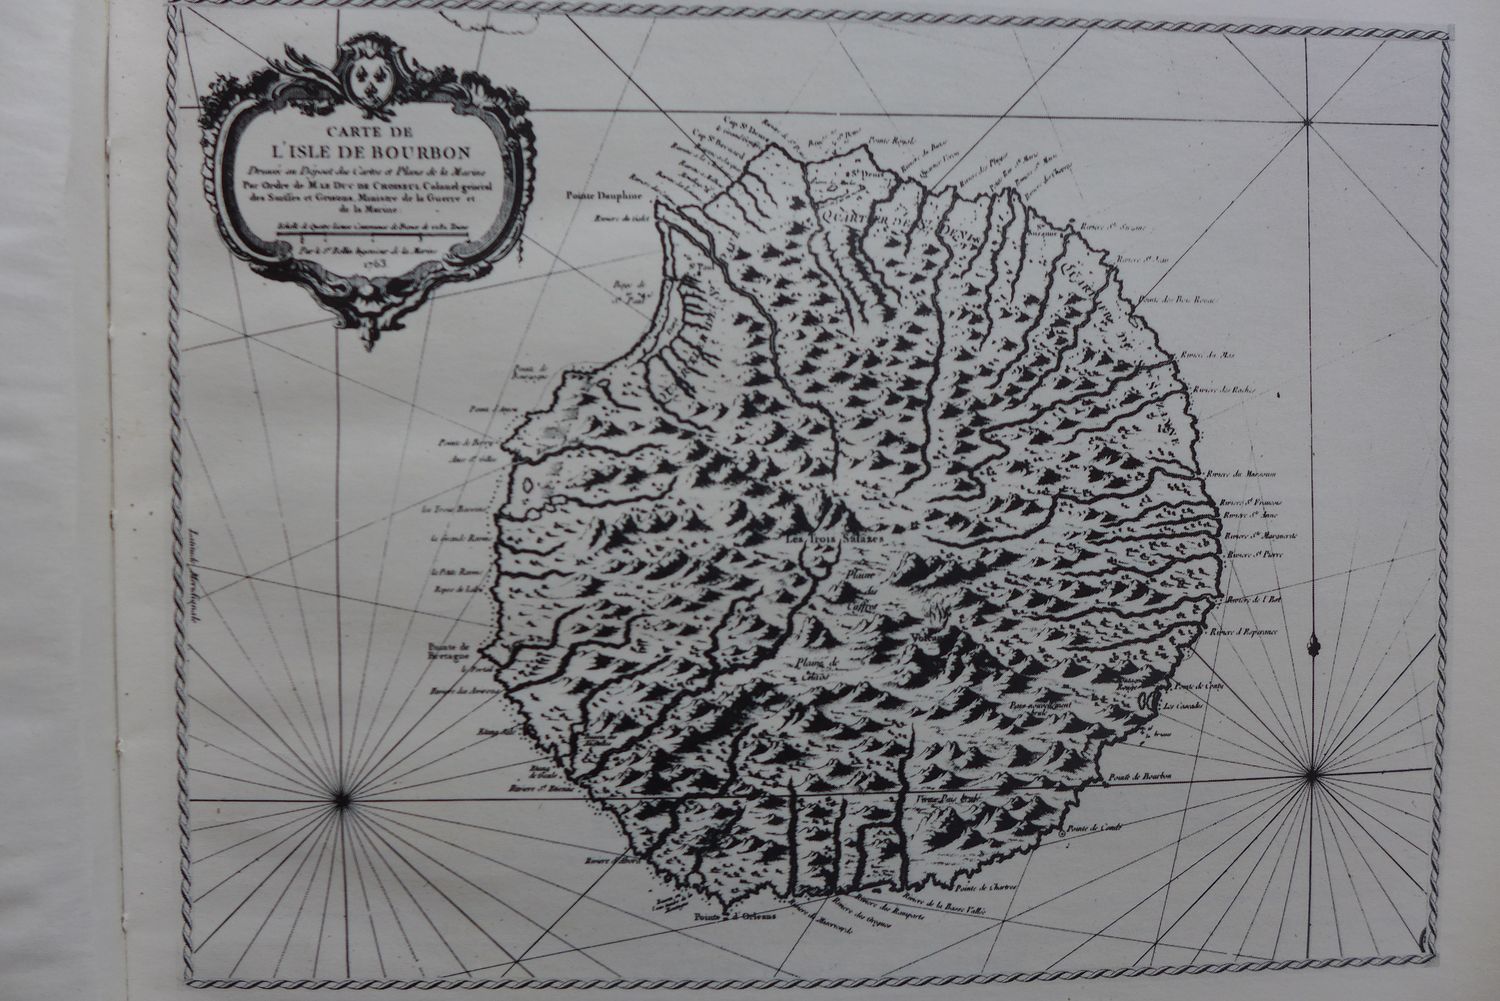 Dans les livres que Ginette a prêtés à Sidonie, il y a la reprographie d’une vieille carte de l’île Bourbon (ancien nom de l’île de la Réunion).